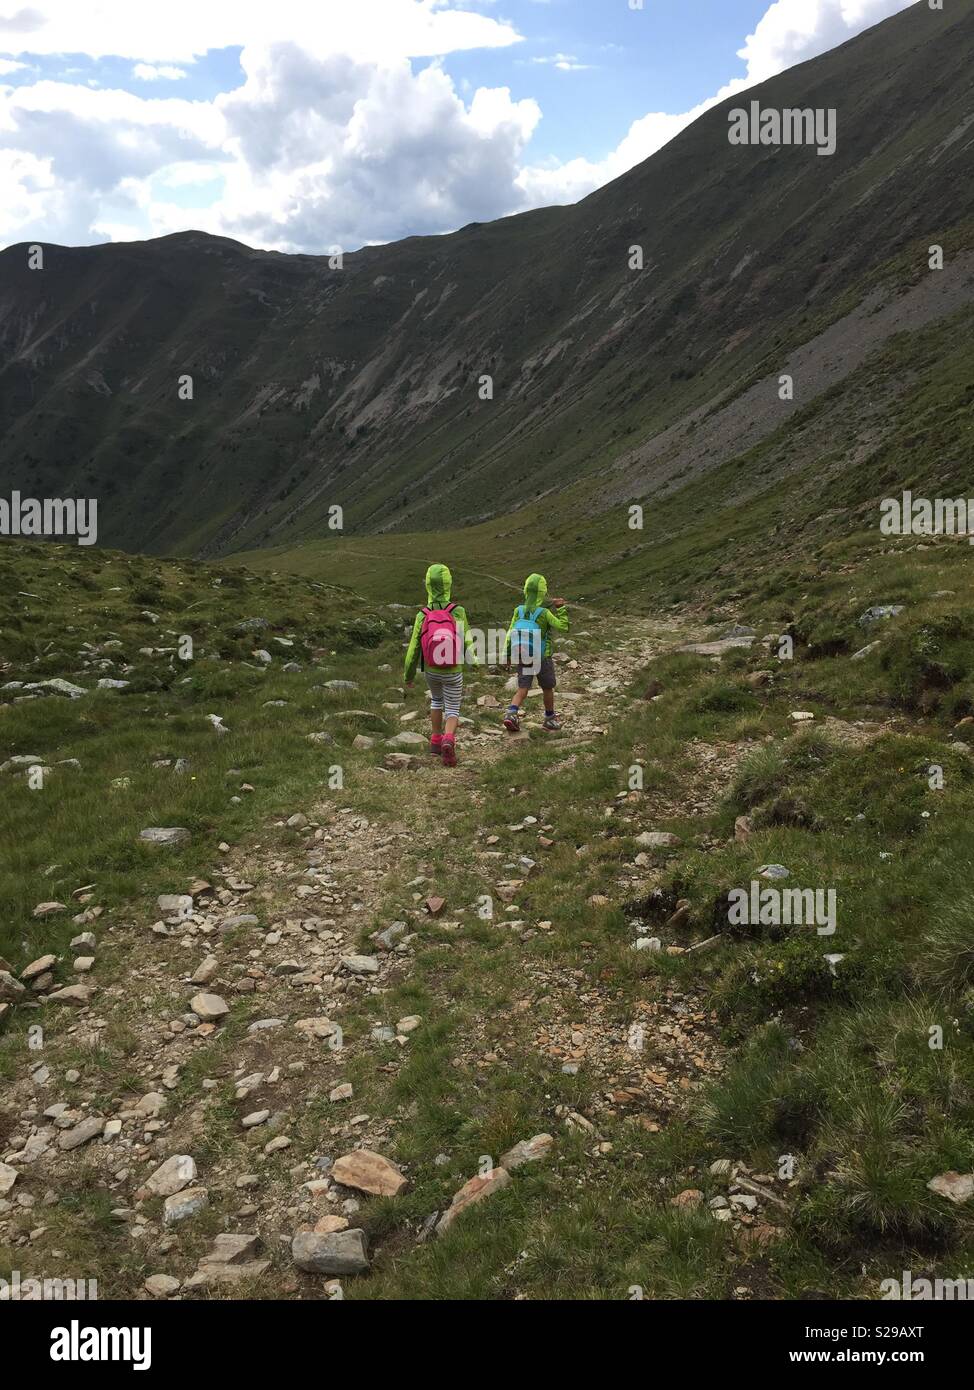 Les enfants de marcher en descente sur un sentier de montagne. Banque D'Images